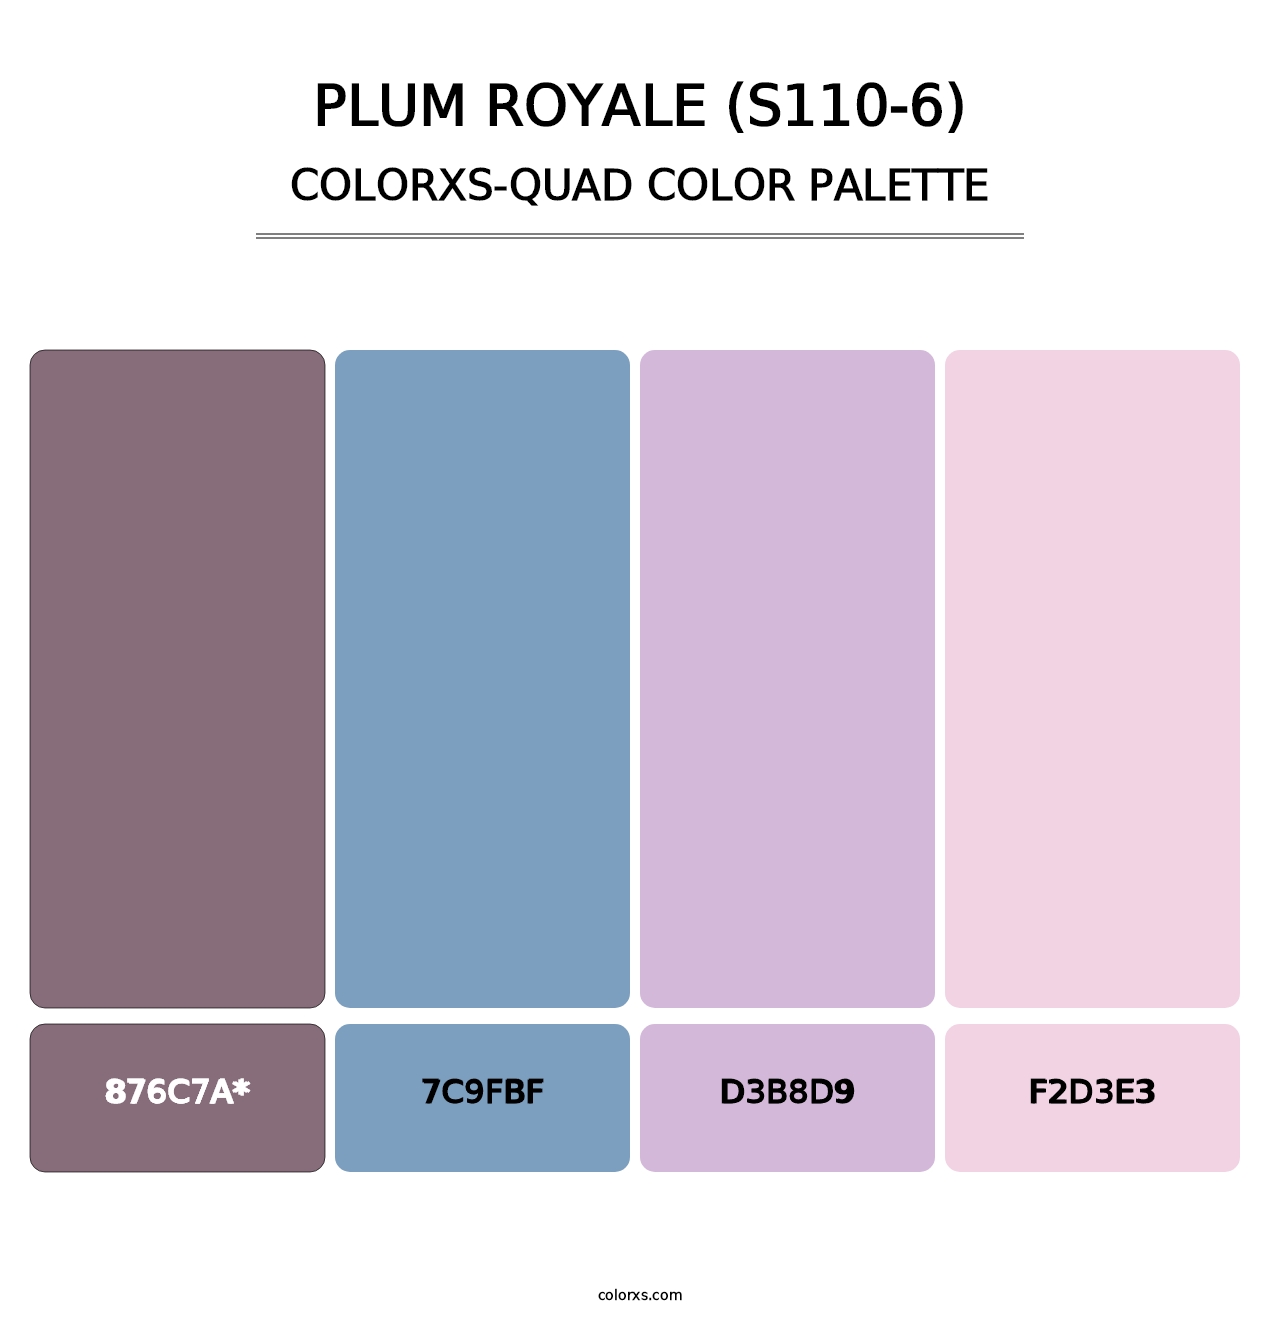 Plum Royale (S110-6) - Colorxs Quad Palette